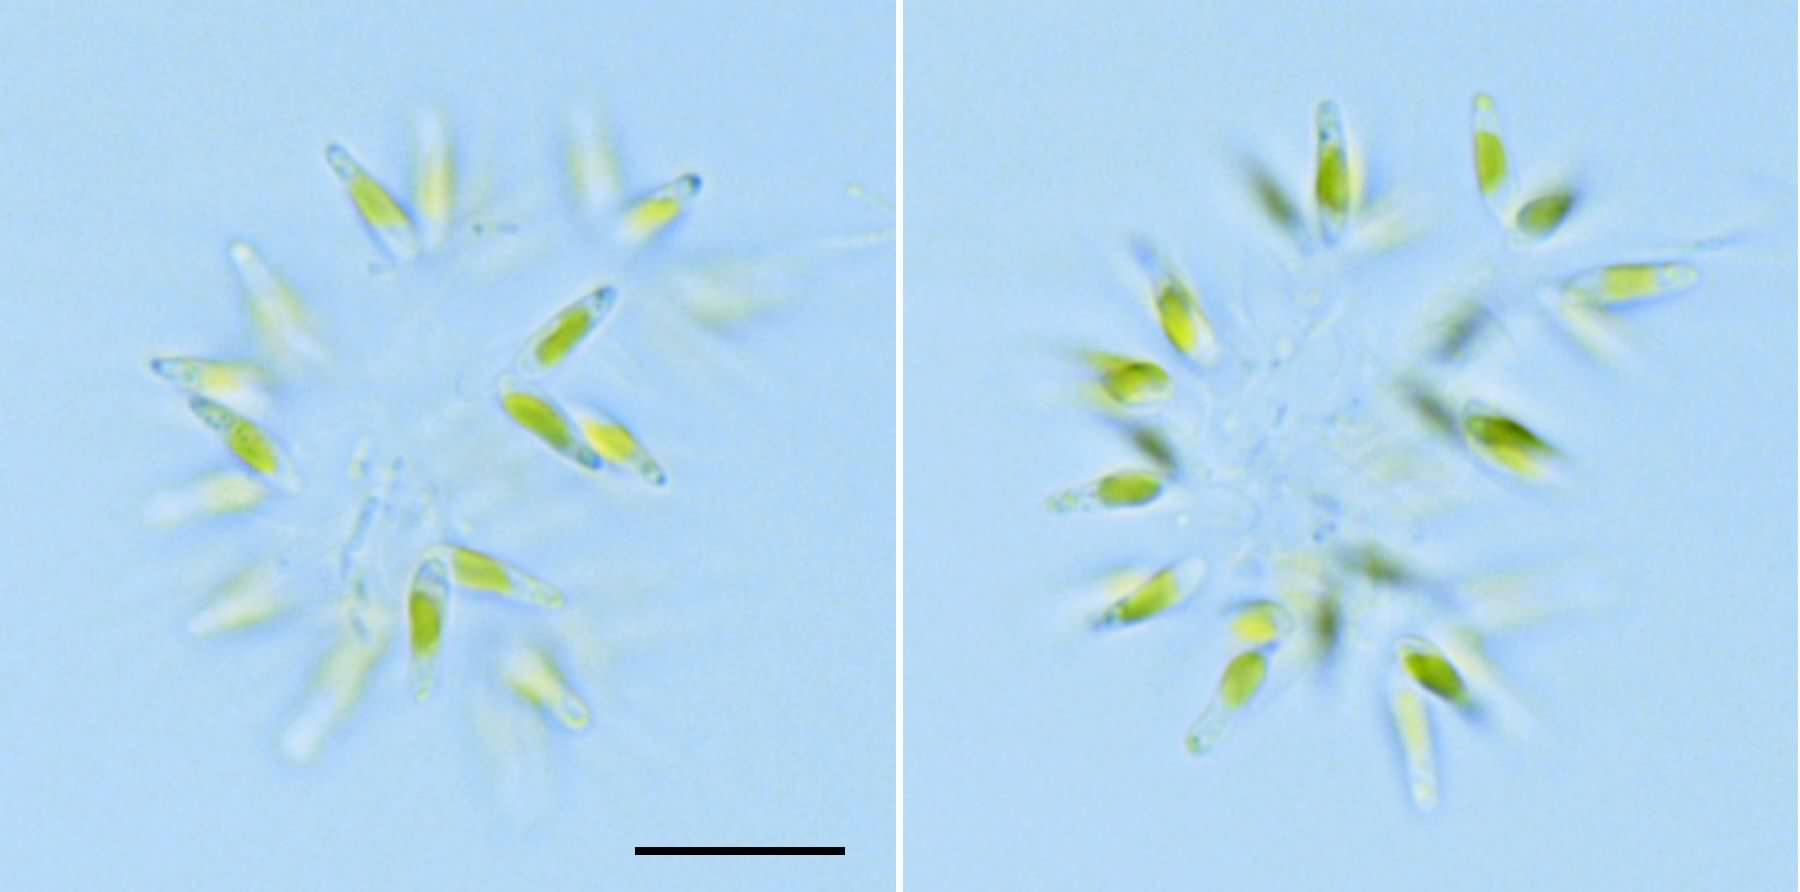 ディコトモコックス? (cf. Dichotomococcus sp.) の画像